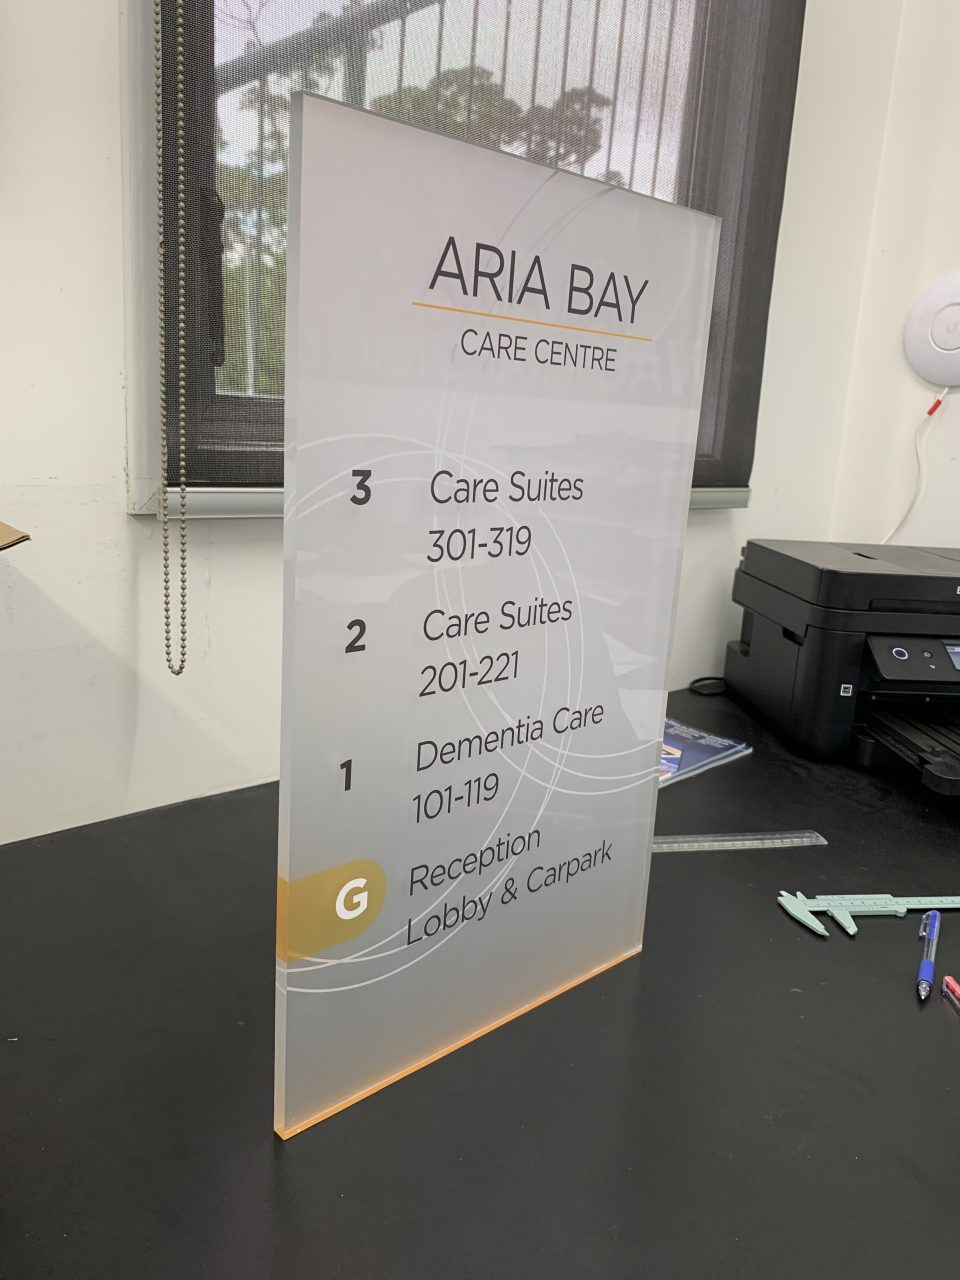 aria bay care centre